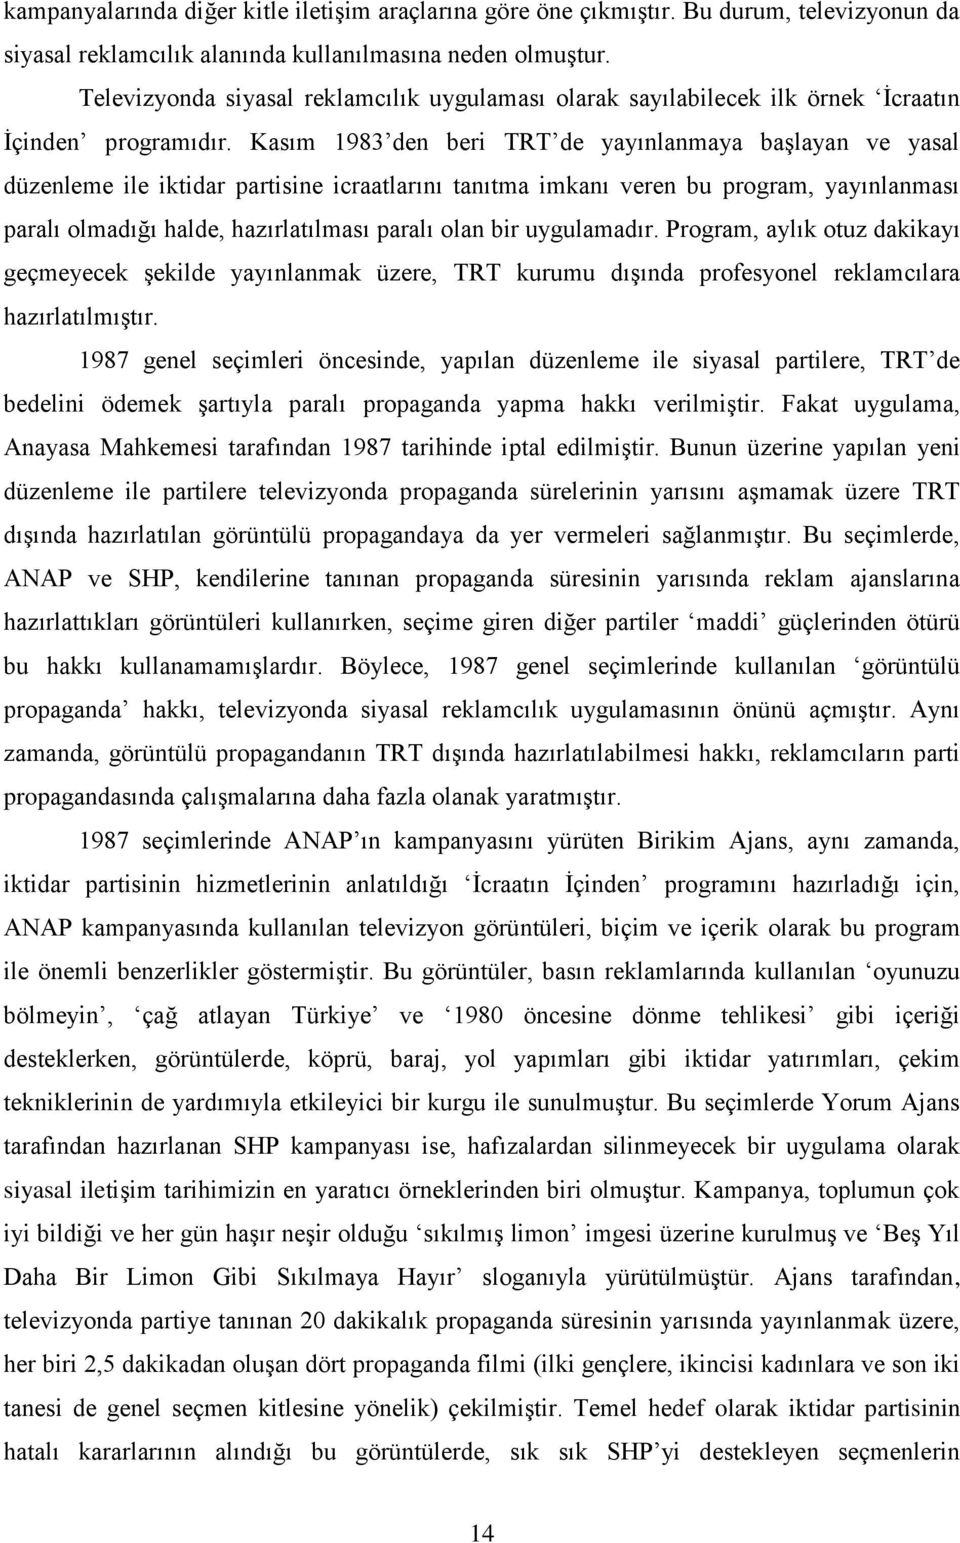 Kasım 1983 den beri TRT de yayınlanmaya başlayan ve yasal düzenleme ile iktidar partisine icraatlarını tanıtma imkanı veren bu program, yayınlanması paralı olmadığı halde, hazırlatılması paralı olan